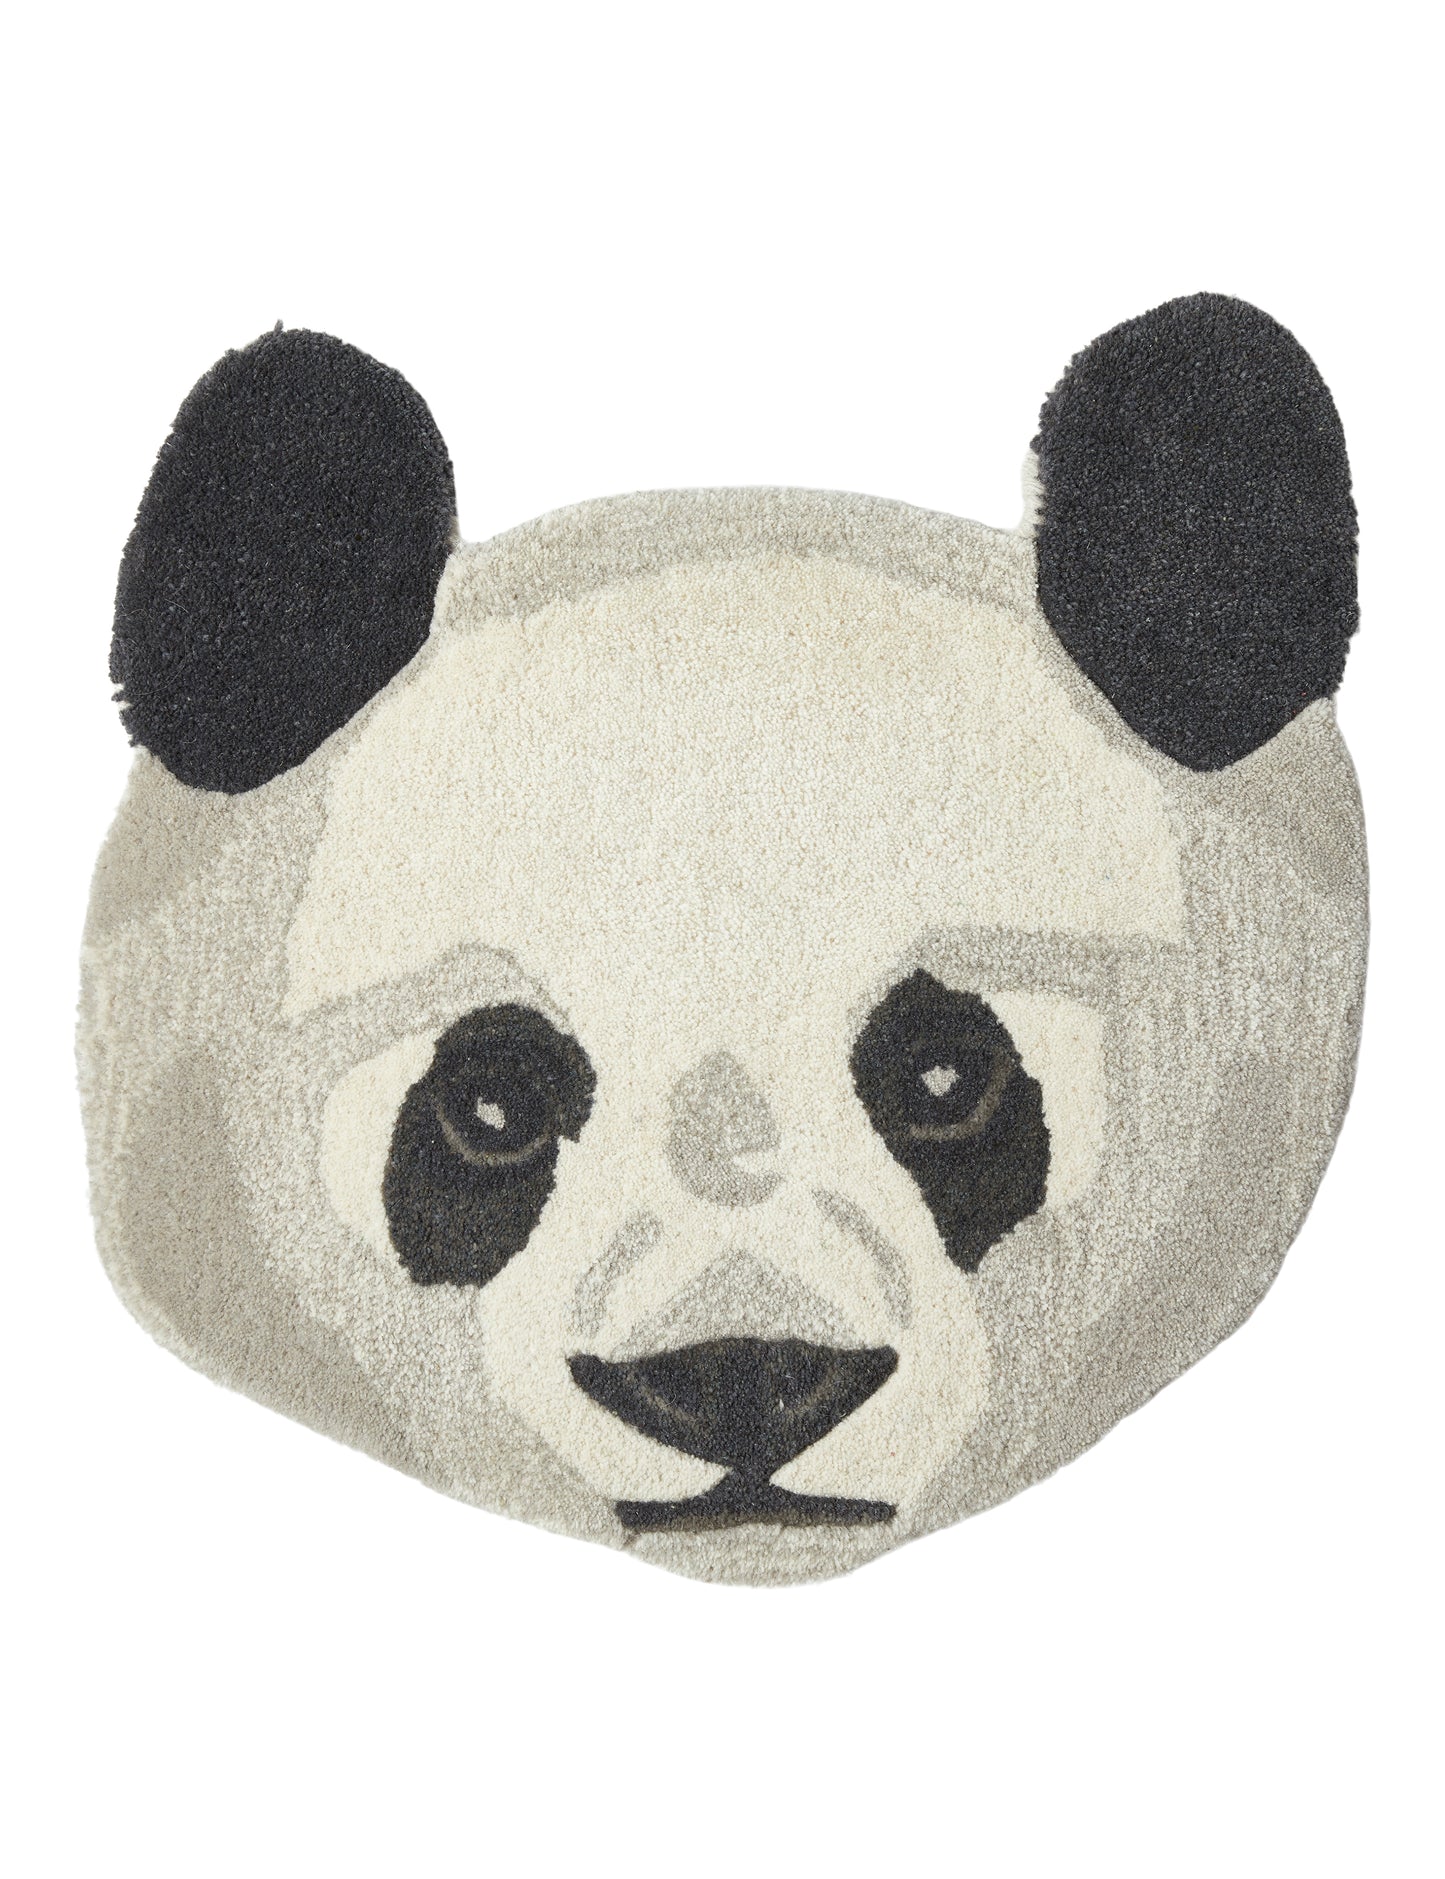 Pandahoved uld gulvtæppe 50 x 50 cm